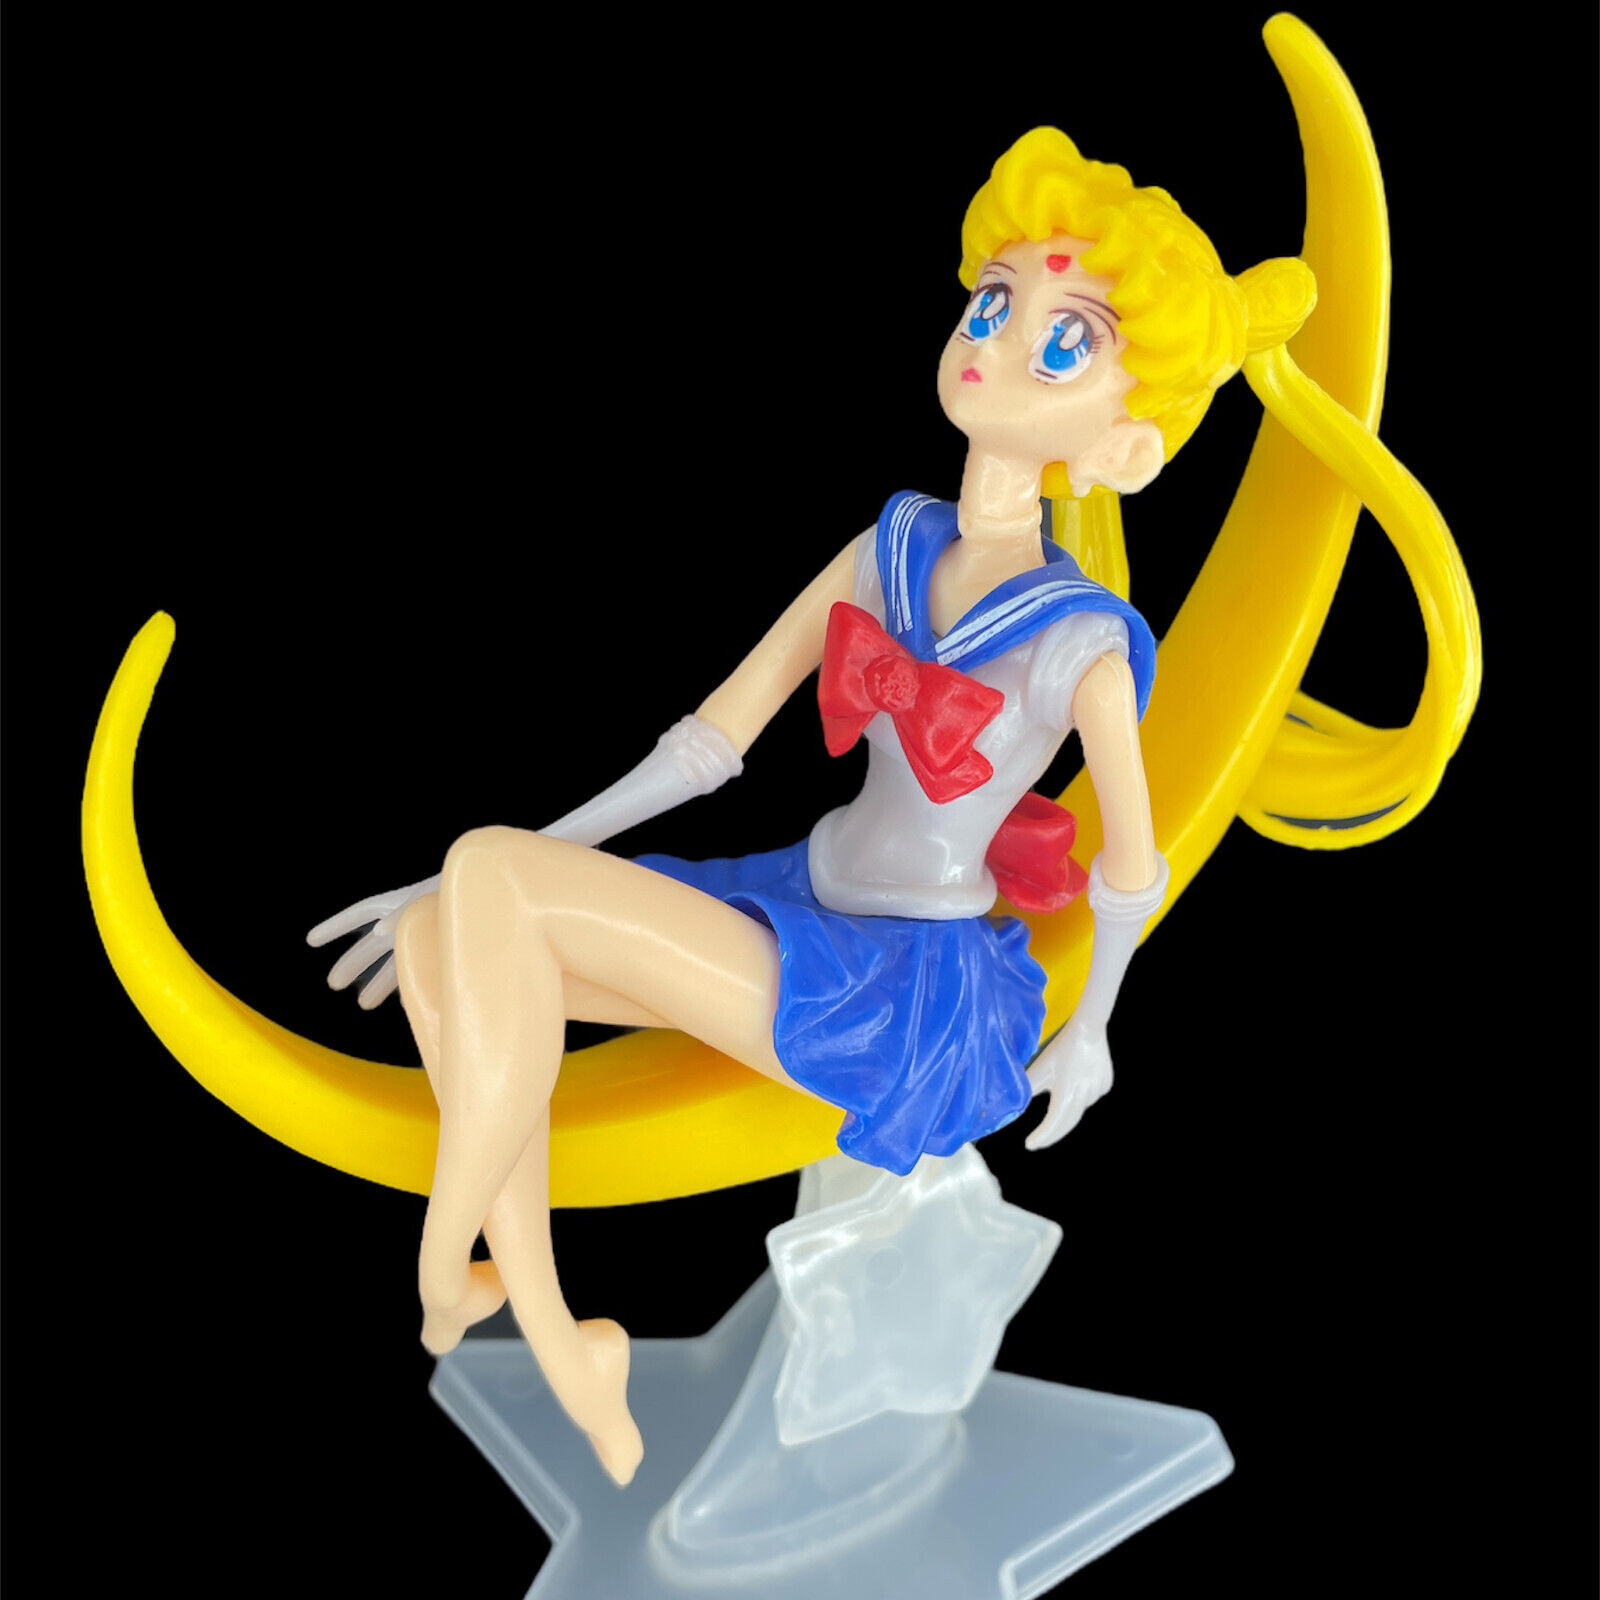 Sailor Moon Tsukino Usagi Anime Action Figure Toy Cake Topper Home & Car Decor